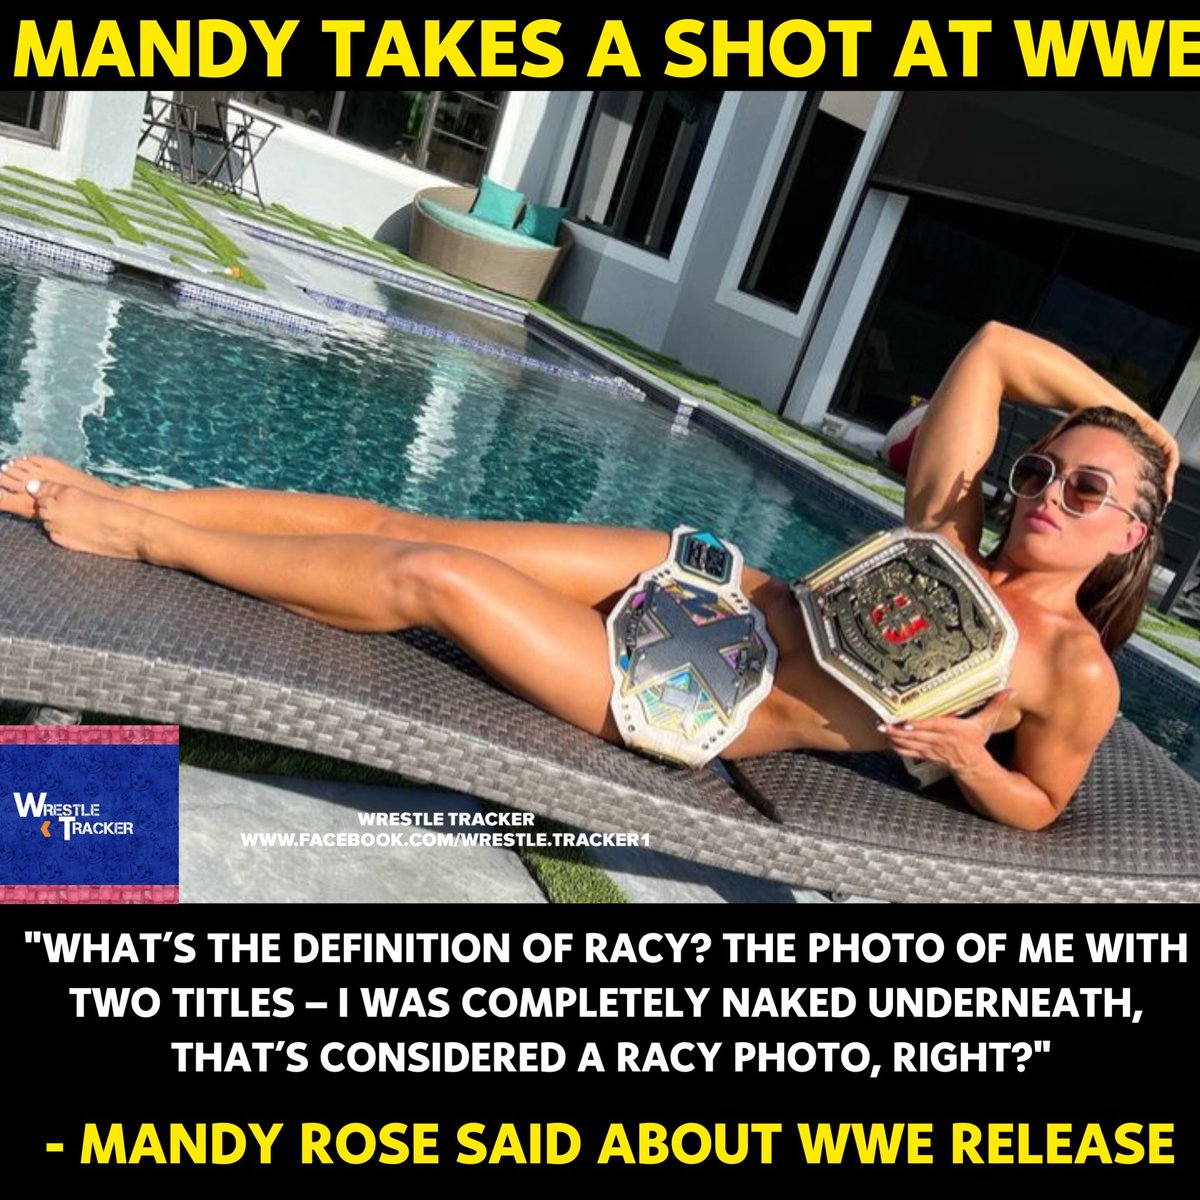 Mandy Rose 😳😳

#WWE #MandyRose